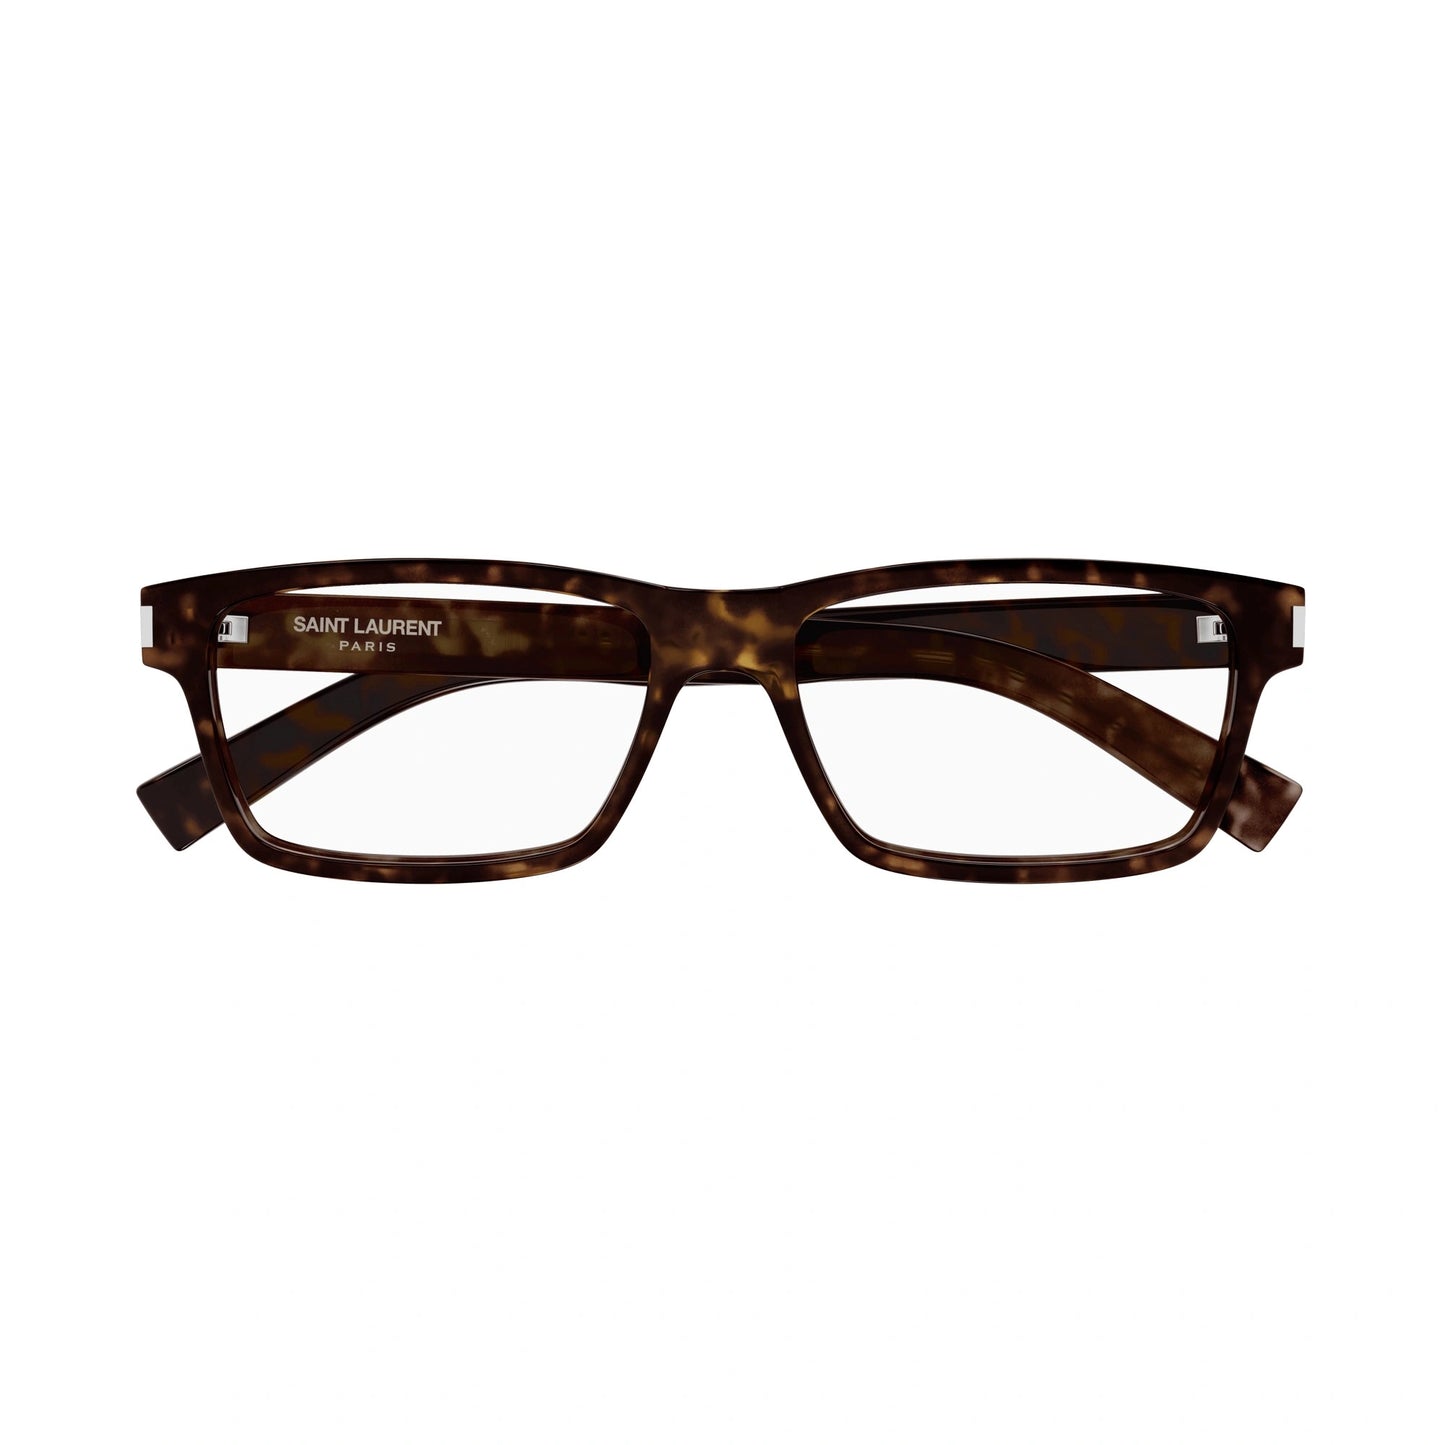 Yvest Saint Laurent SL-622-008 58mm New Eyeglasses